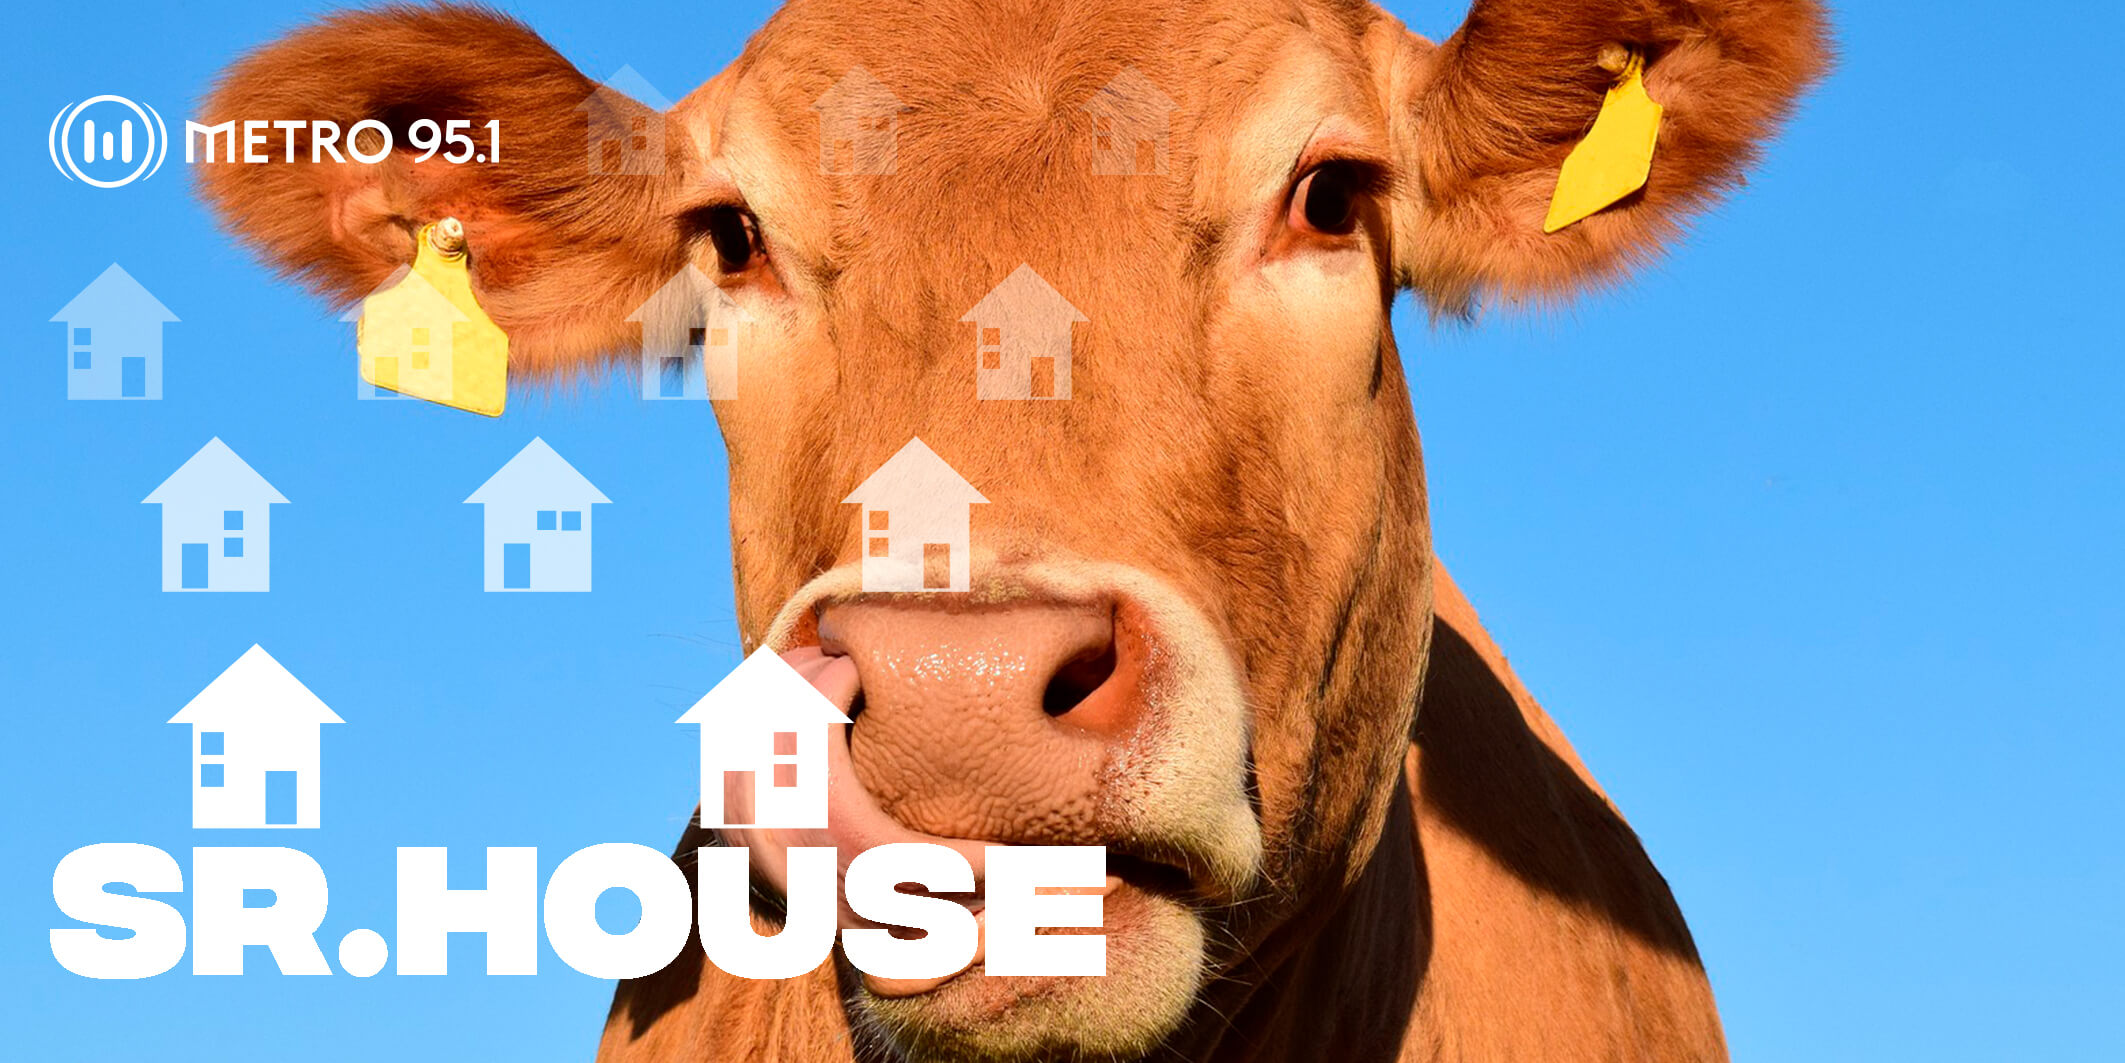 #SrHouse – Invertir en vacas